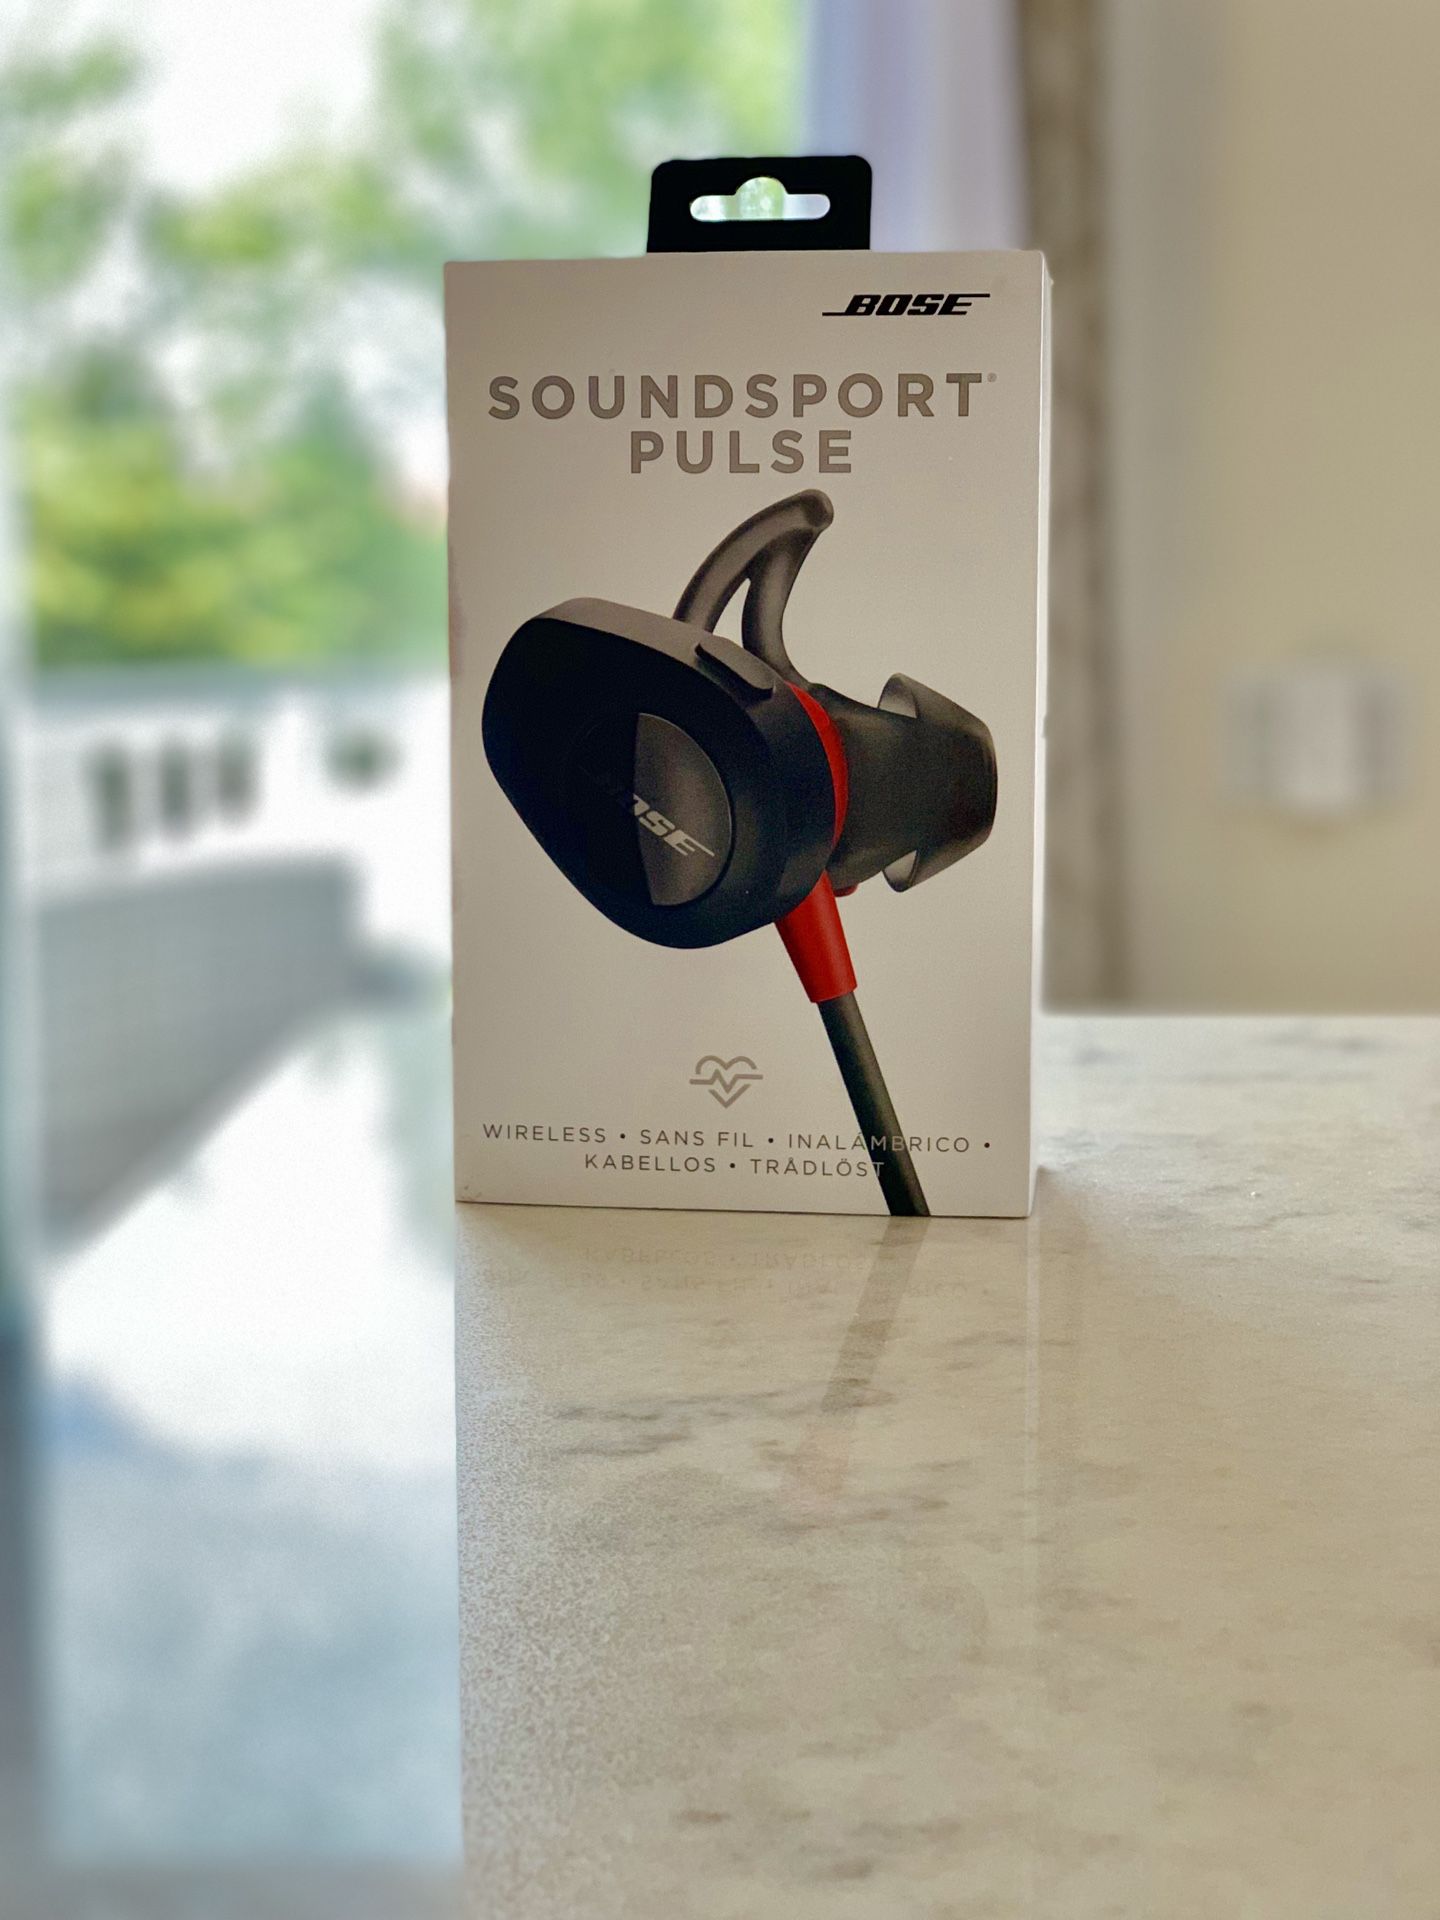 Bose Soundsport Pulse earbuds